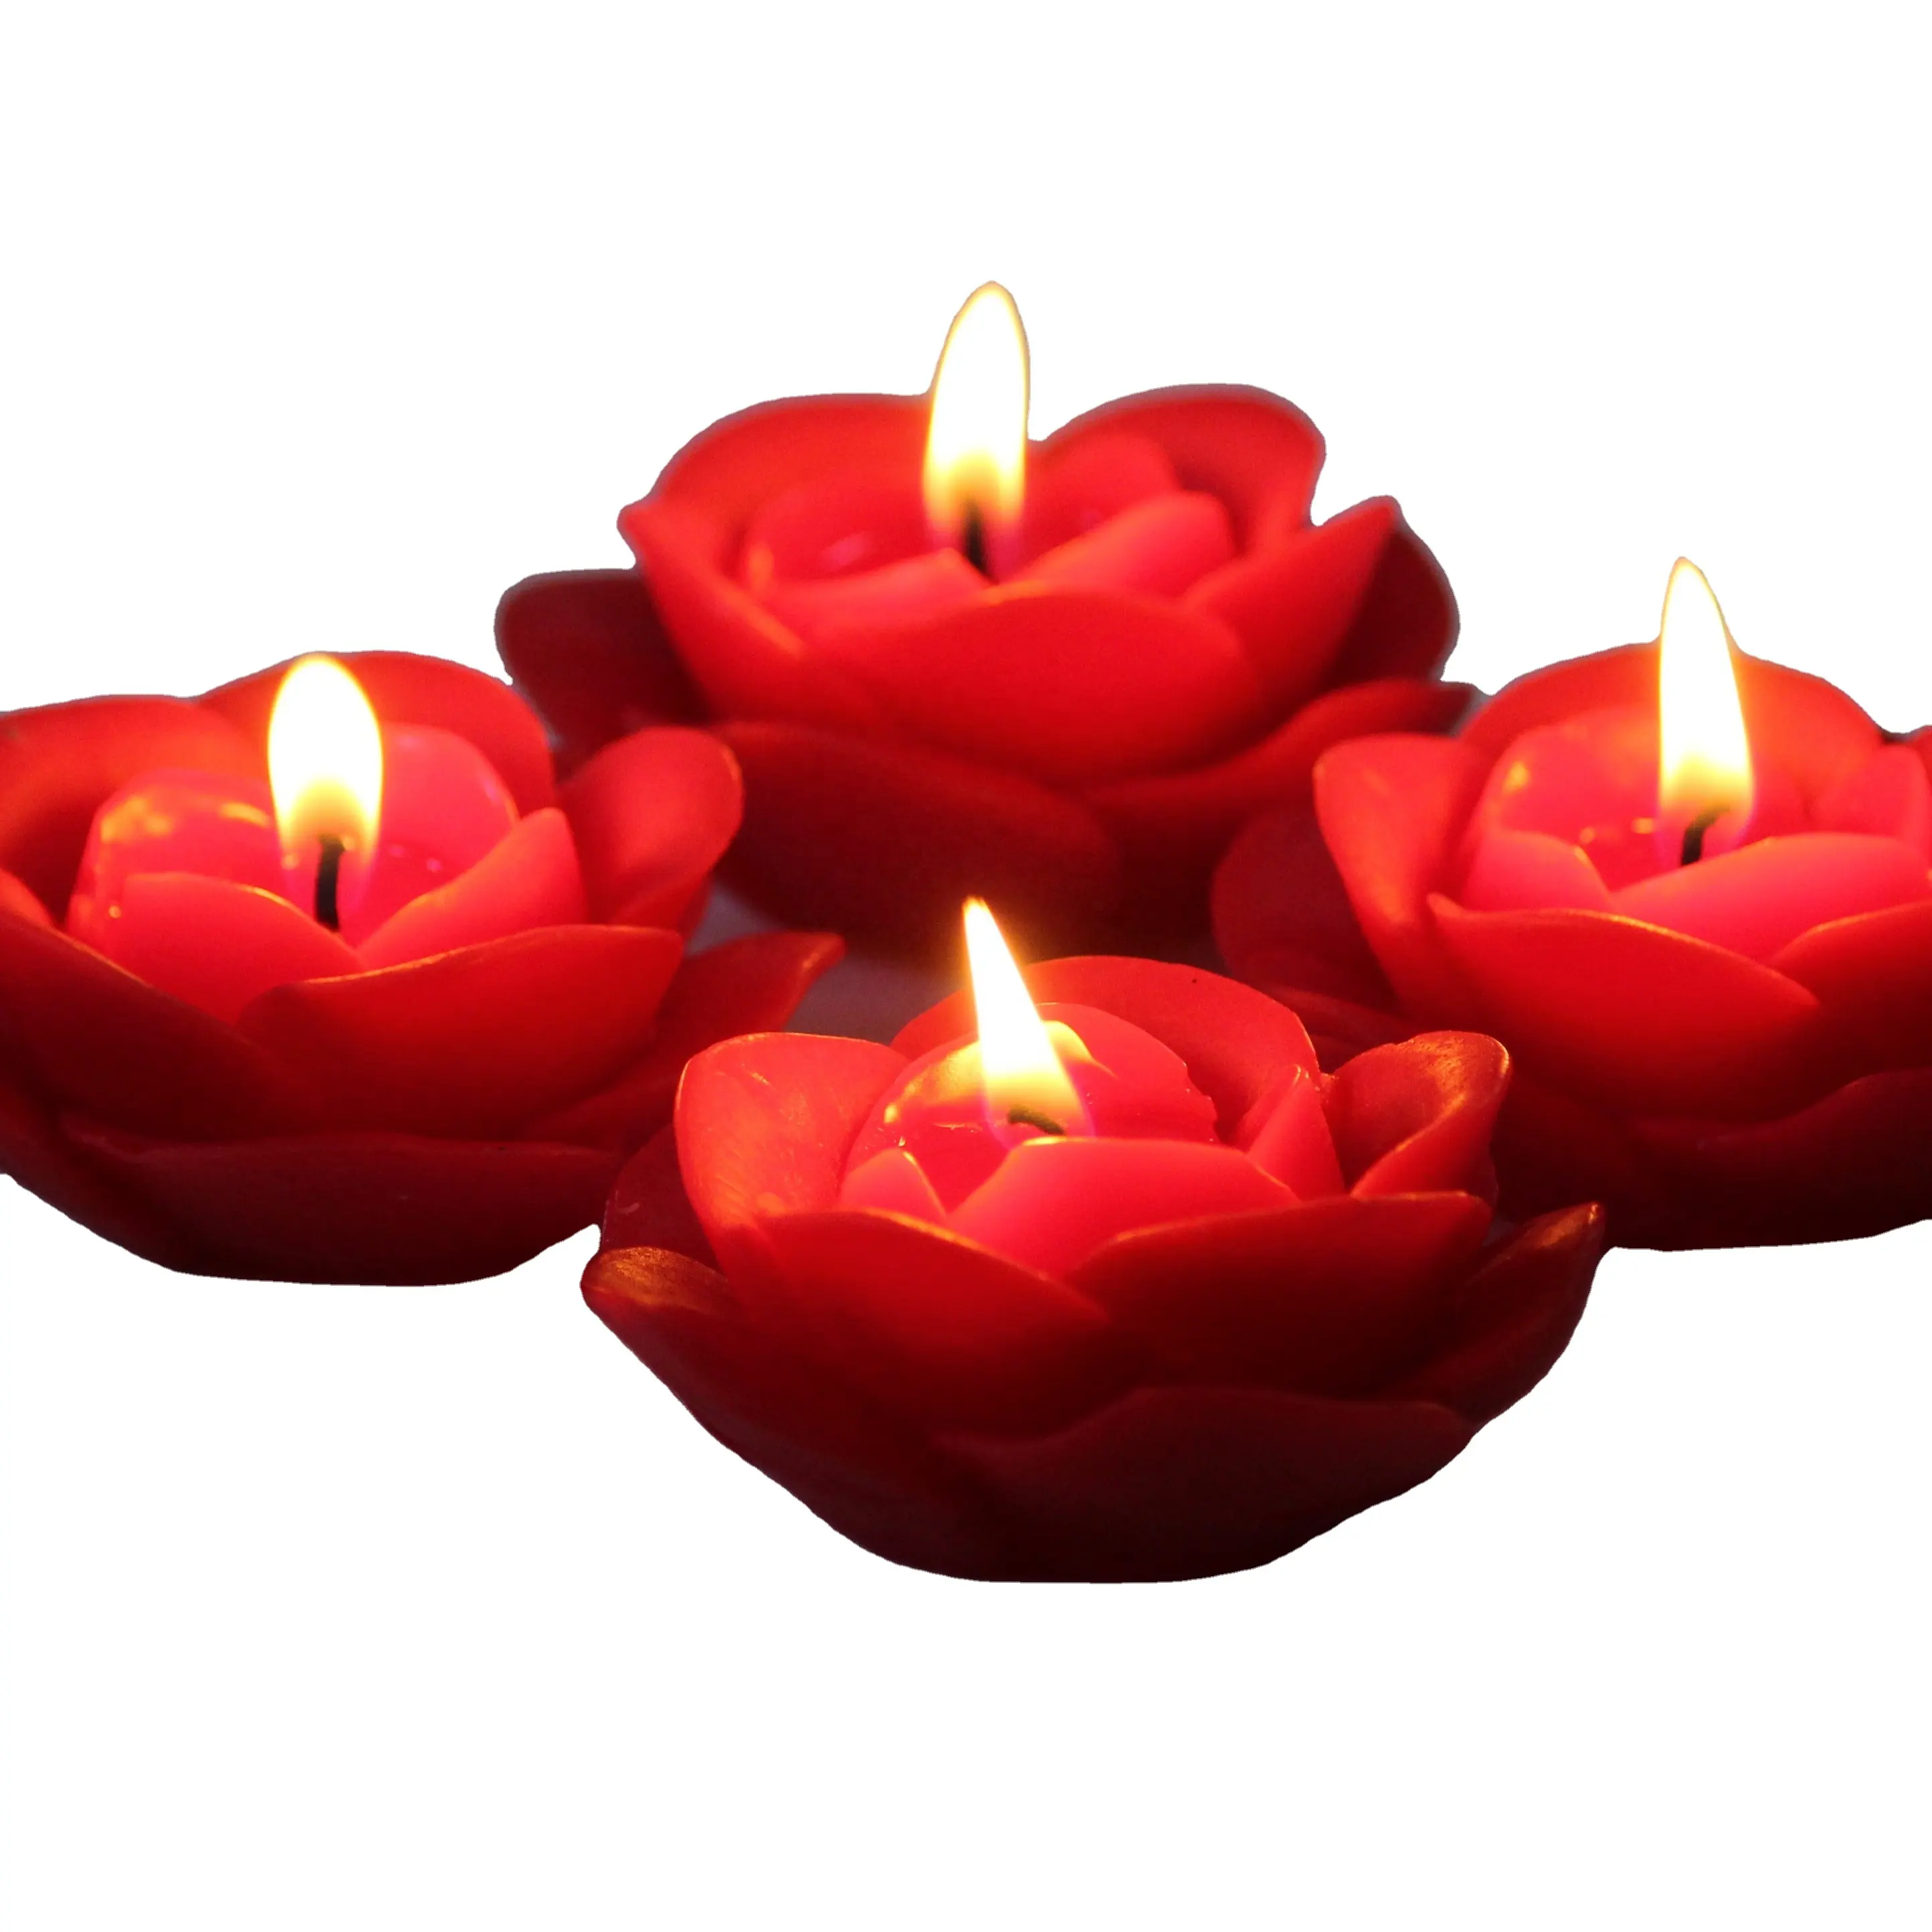 ขี้ผึ้งพาราฟินคุณภาพสูงรูปดอกกุหลาบสีแดงเทียนหอมเทียนพร้อมเทียนของขวัญตกแต่งไร้ควัน